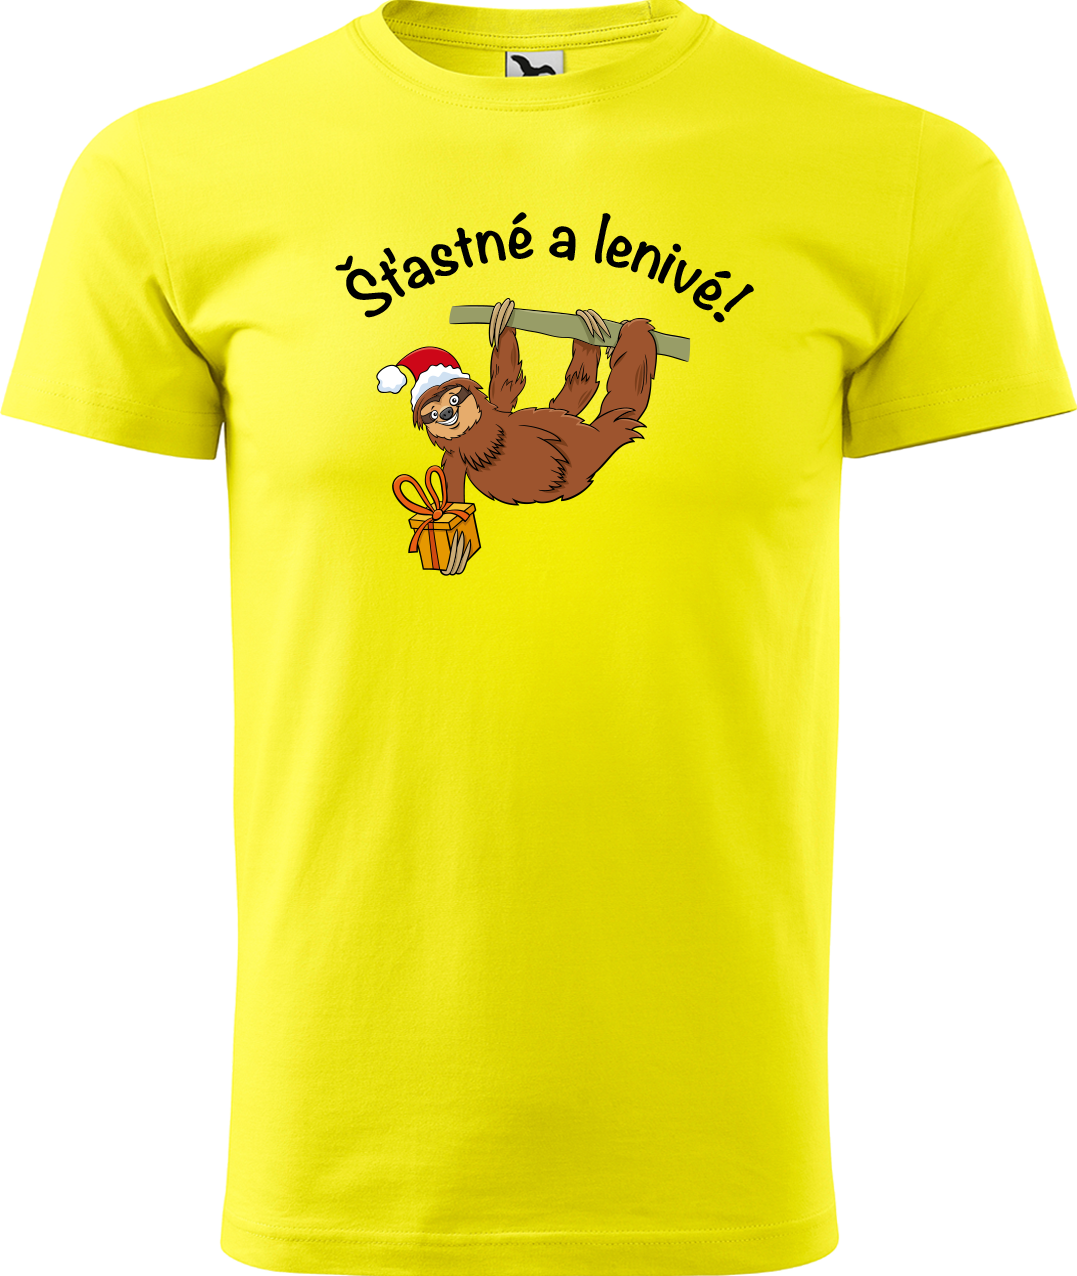 Pánské vánoční tričko - Šťastné a lenivé! Velikost: XL, Barva: Žlutá (04)